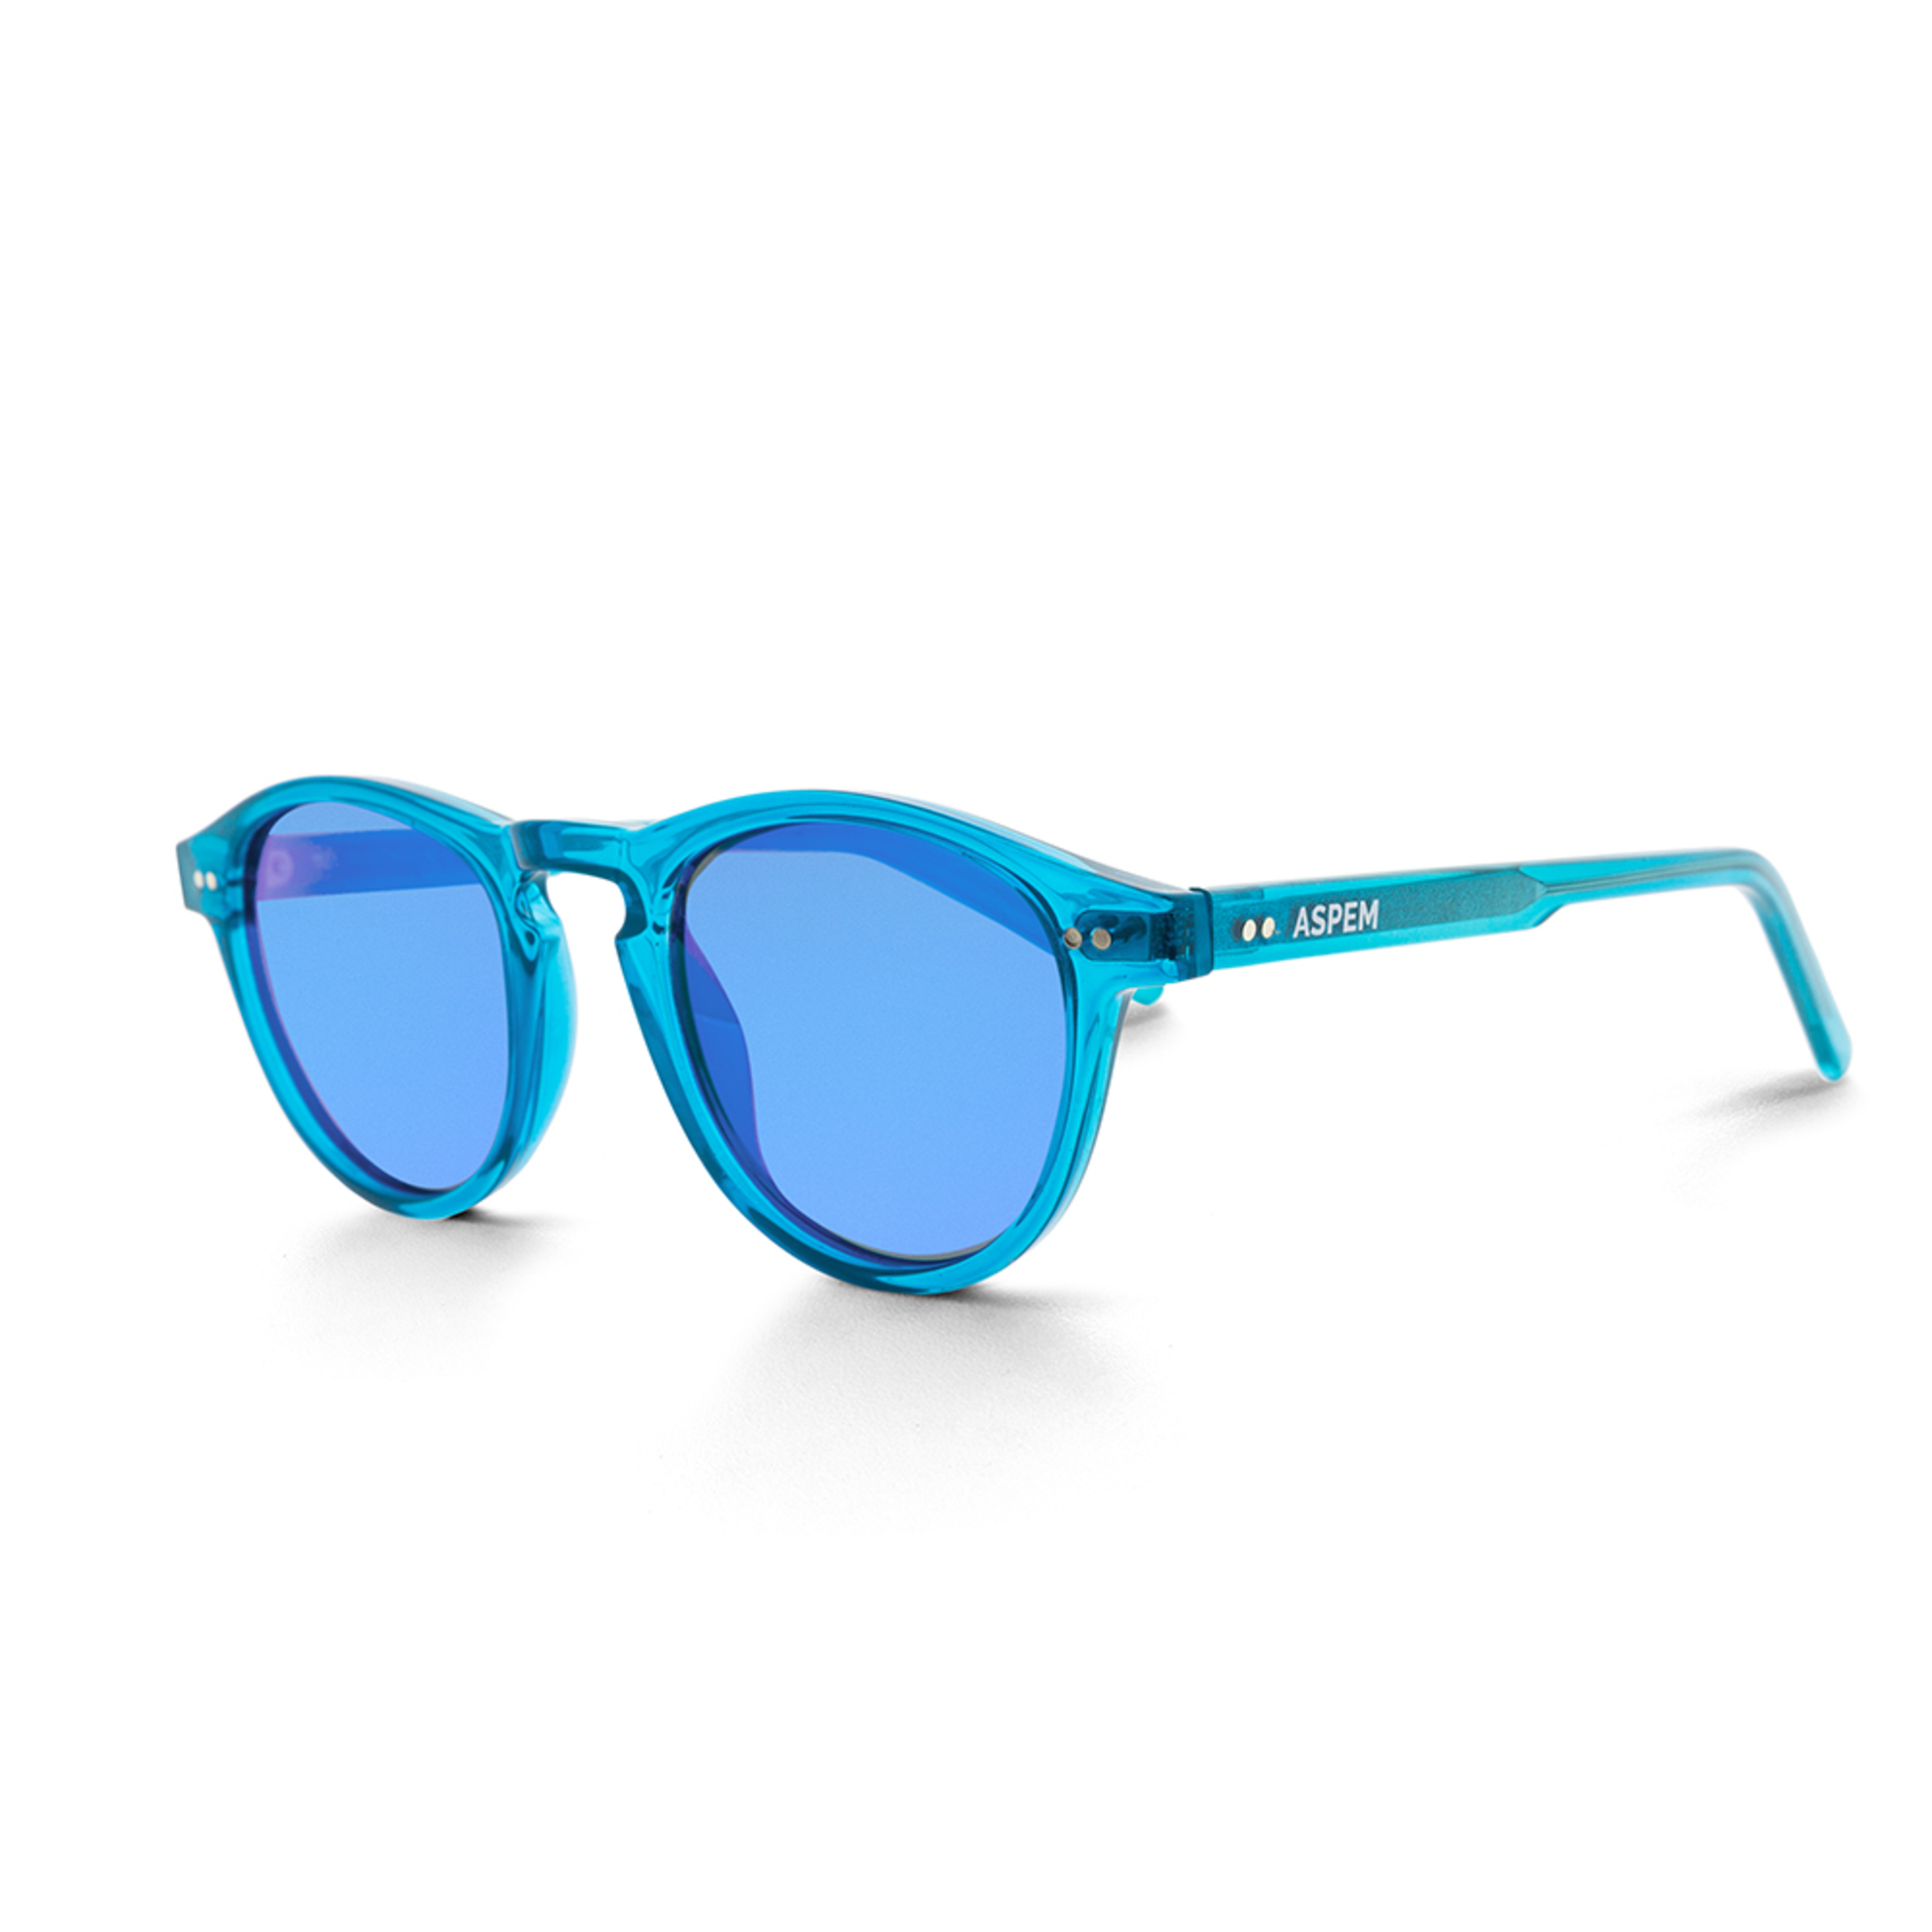 Gafas De Sol Aspem Crowley - azul-turquesa - 